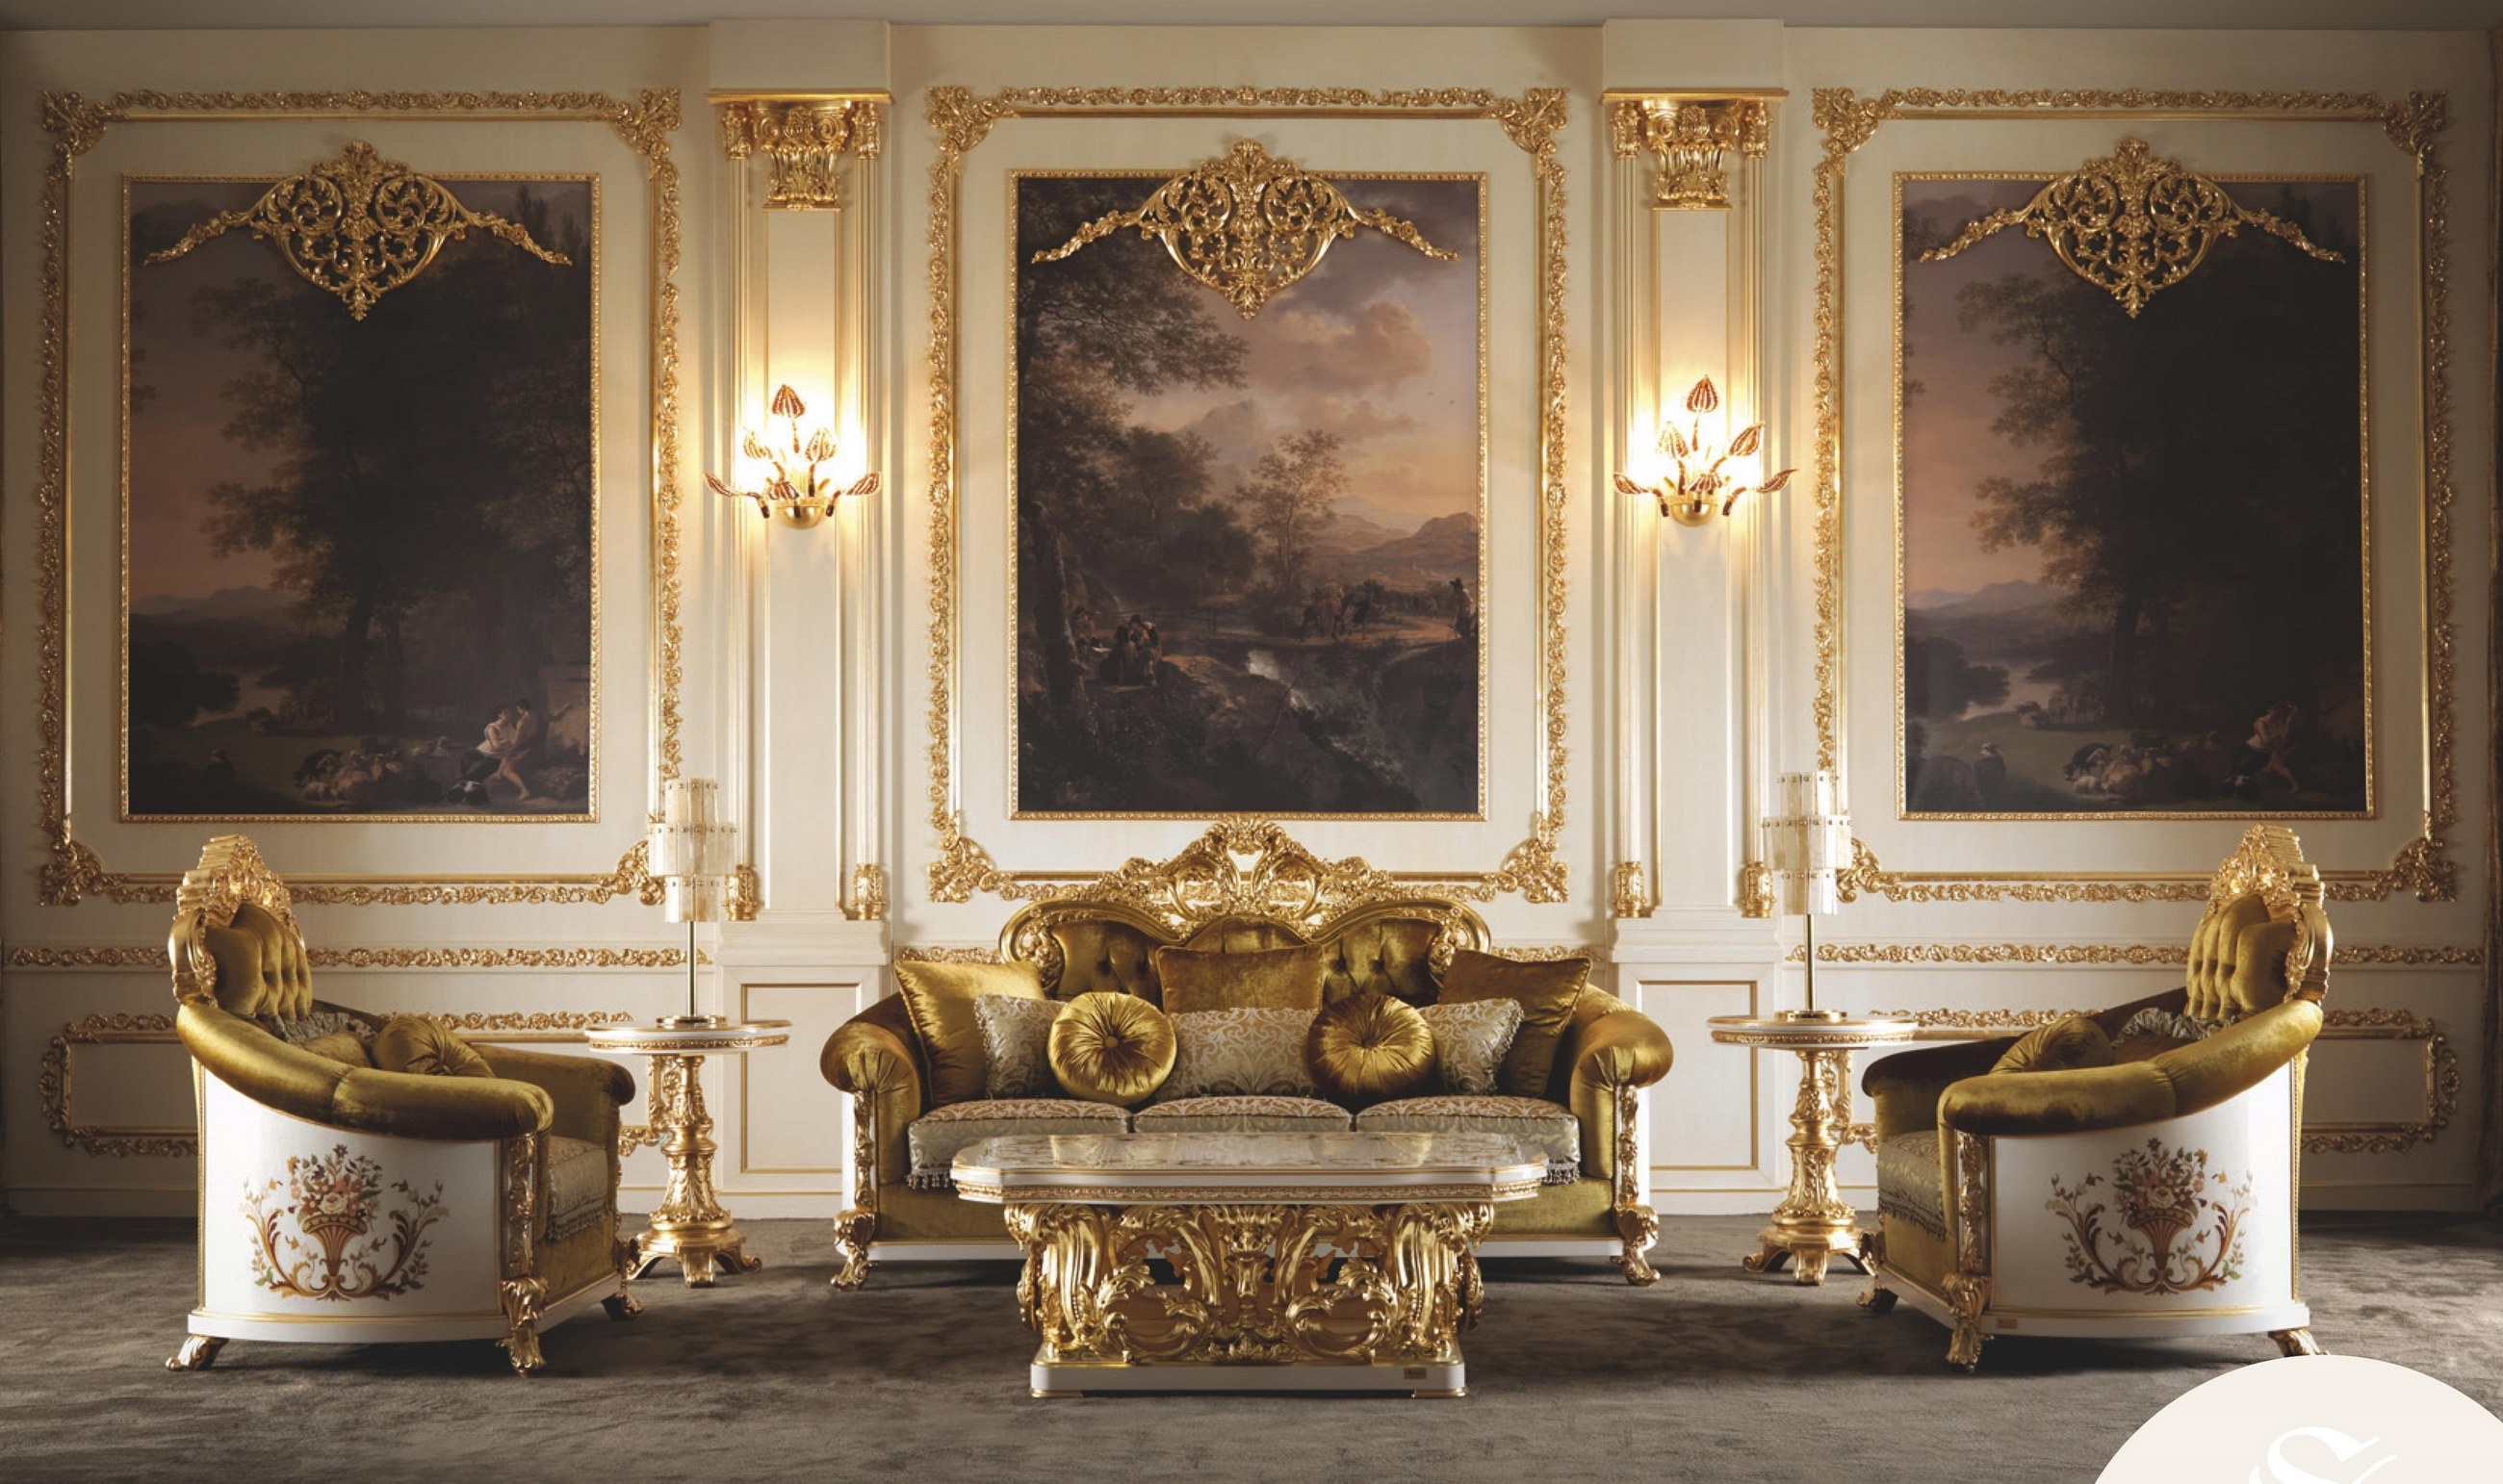 Магазин версаль великие. Мебель Socci Versailles Anchise. Версальский дворец мебель. Гостиная Версалес Китай. Мебель с позолотой.